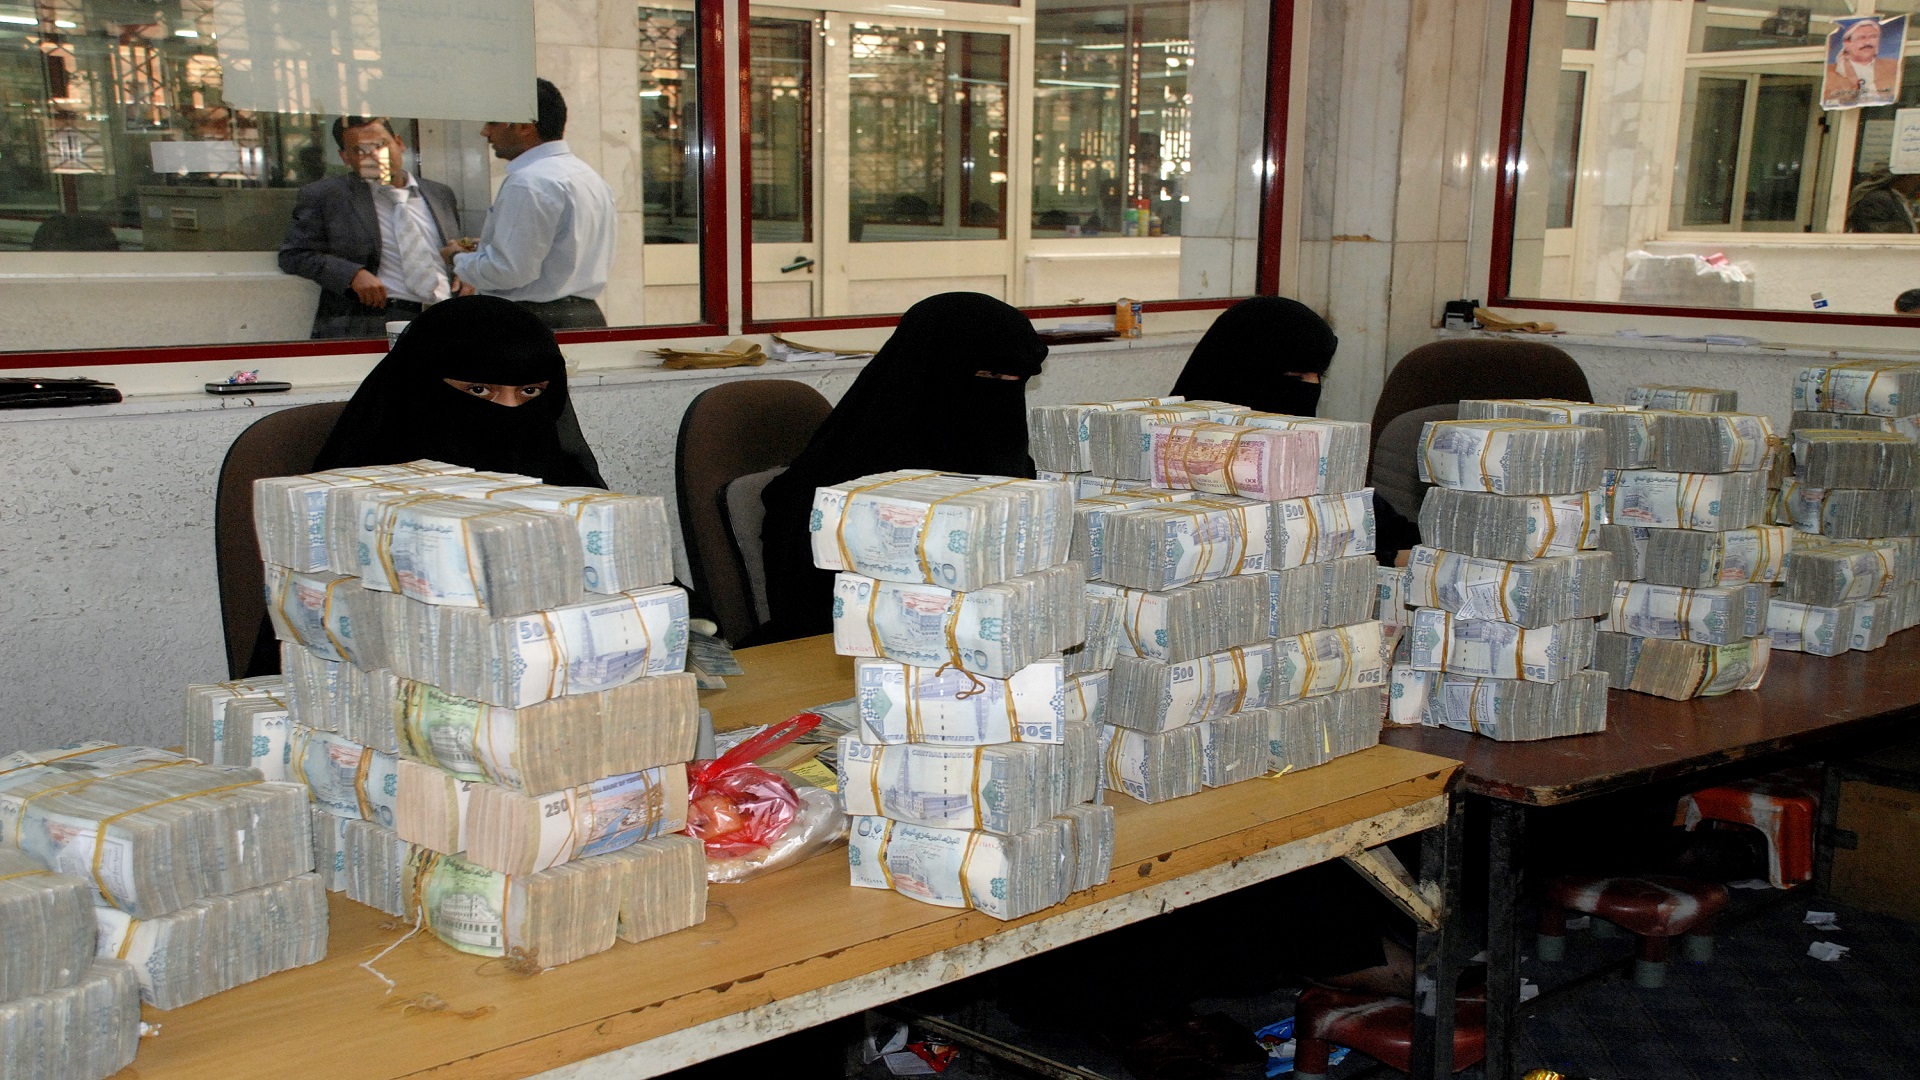 ”مركز كارنيجي للدراسات” يتحدث عن “معركة بنوك في اليمن“ ويحذّر من “انهيار اقتصادي”